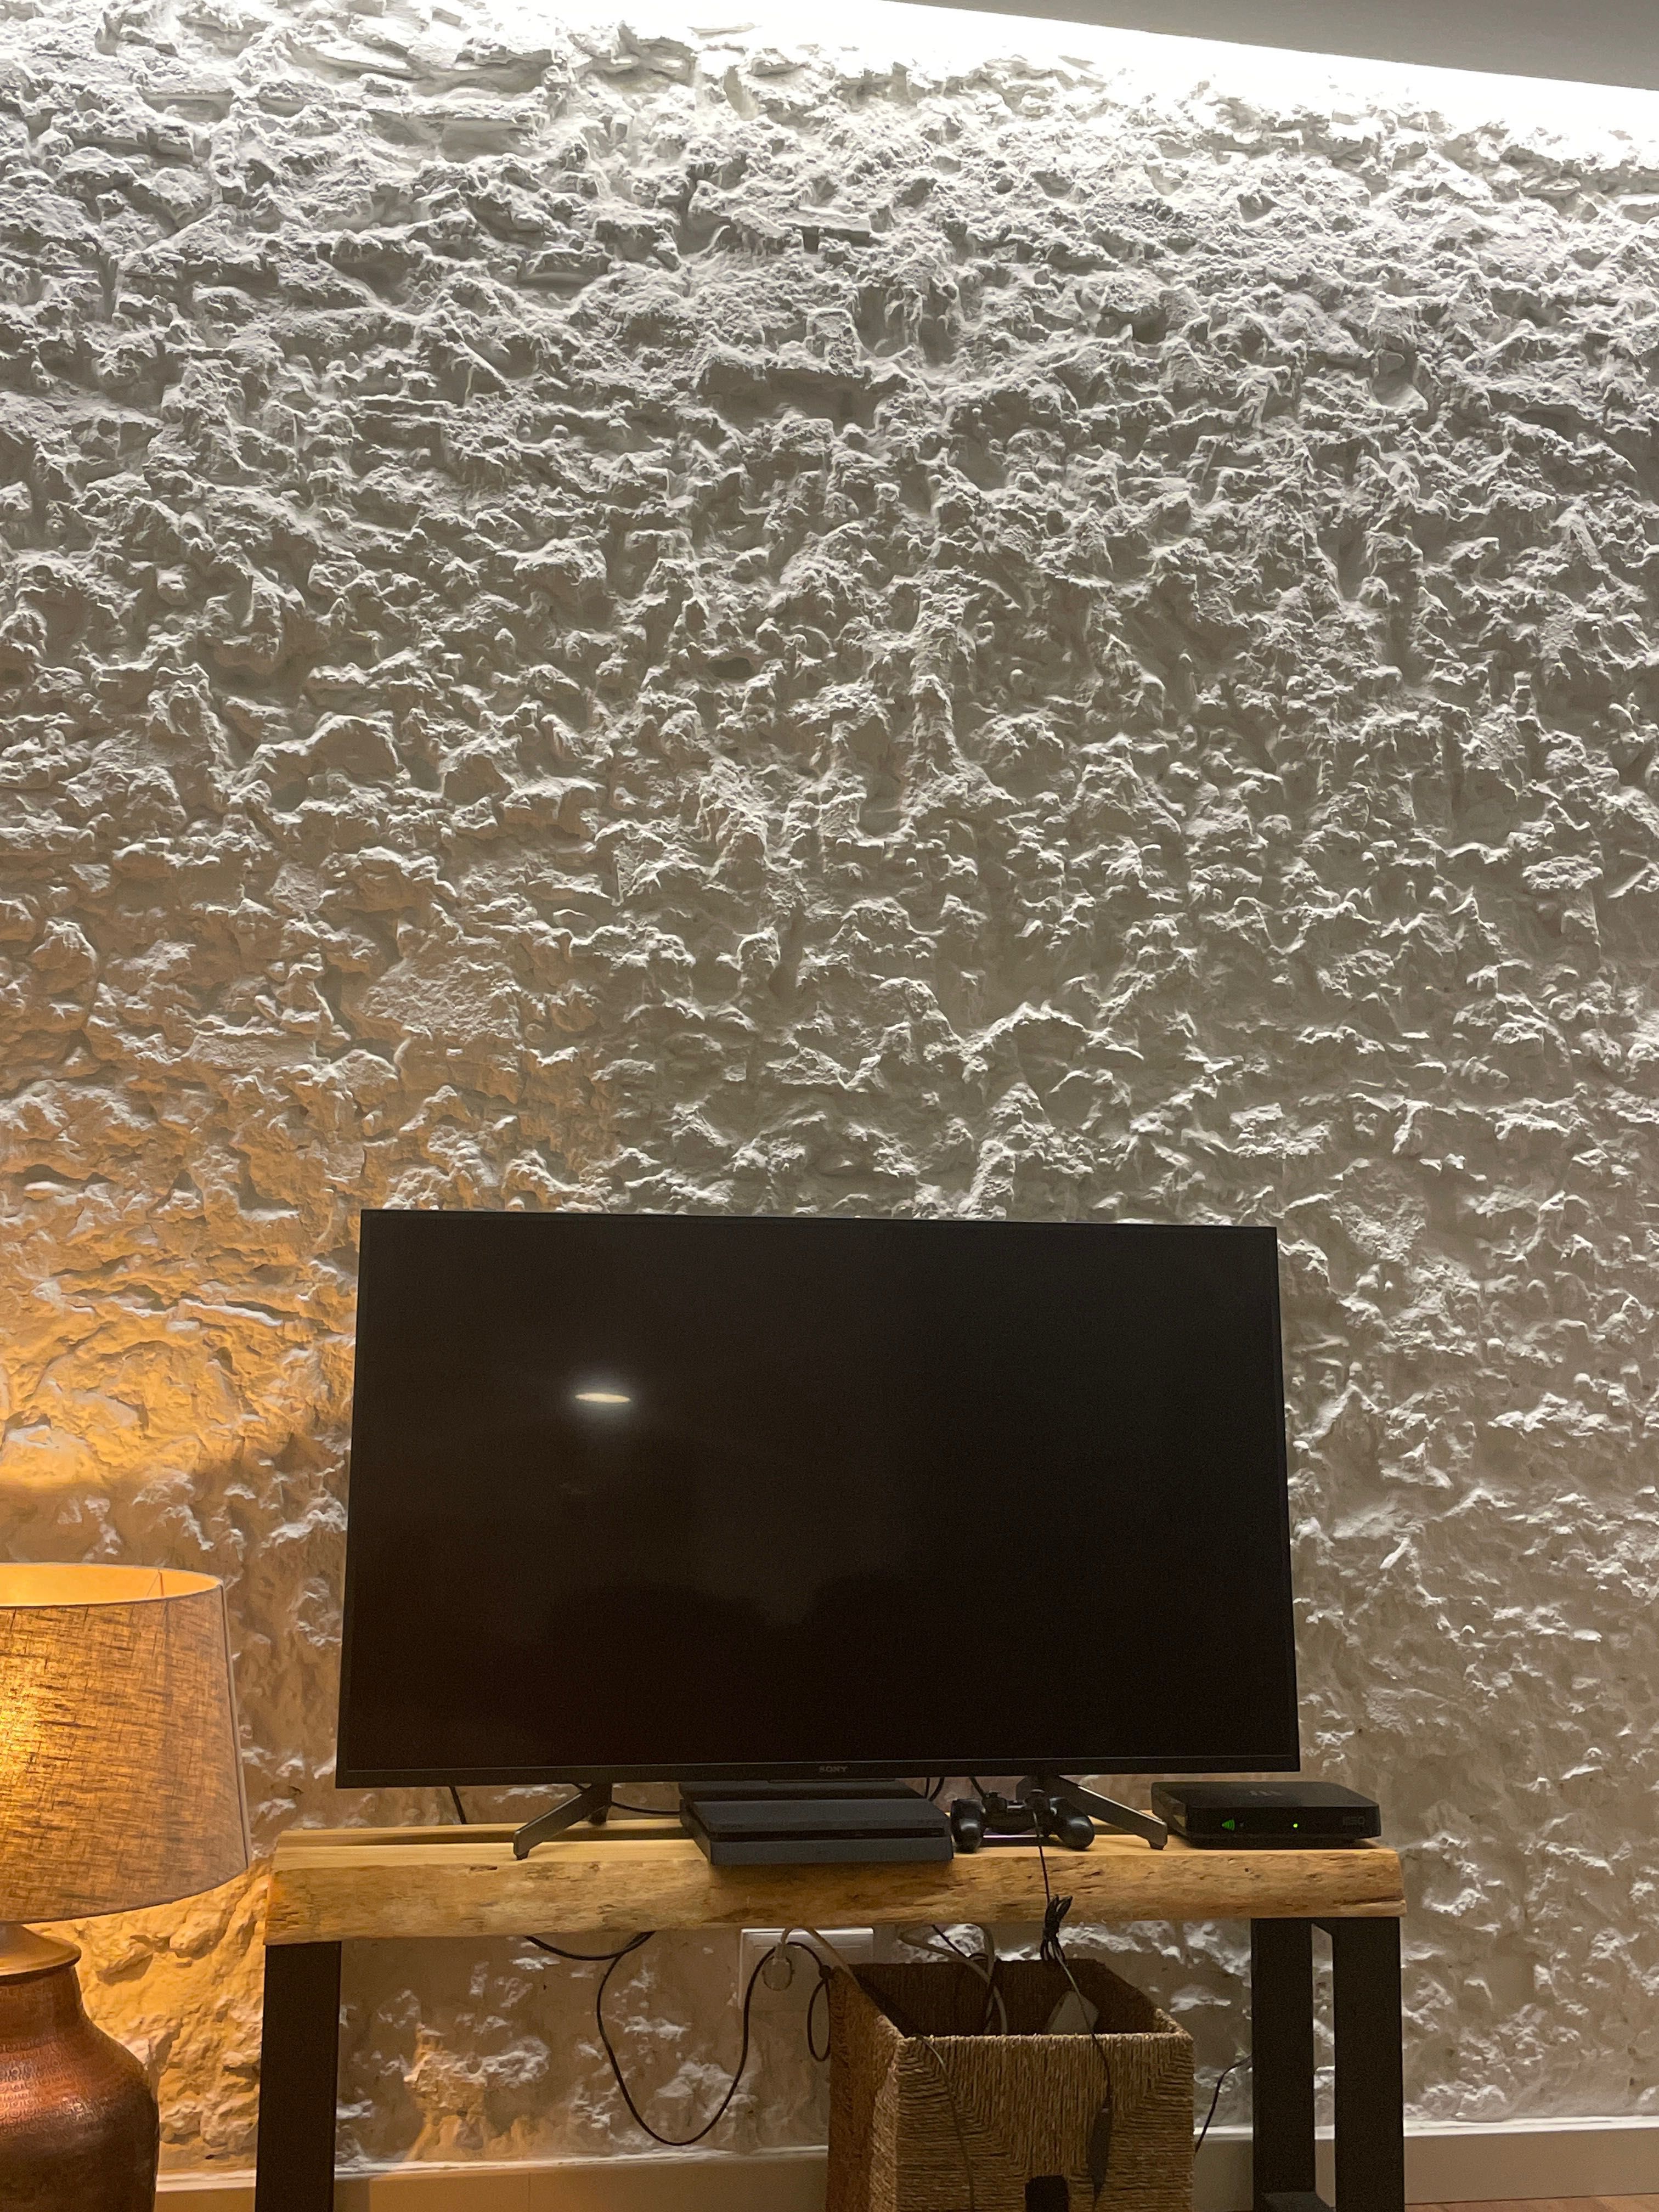 Televisão SONY -LCD